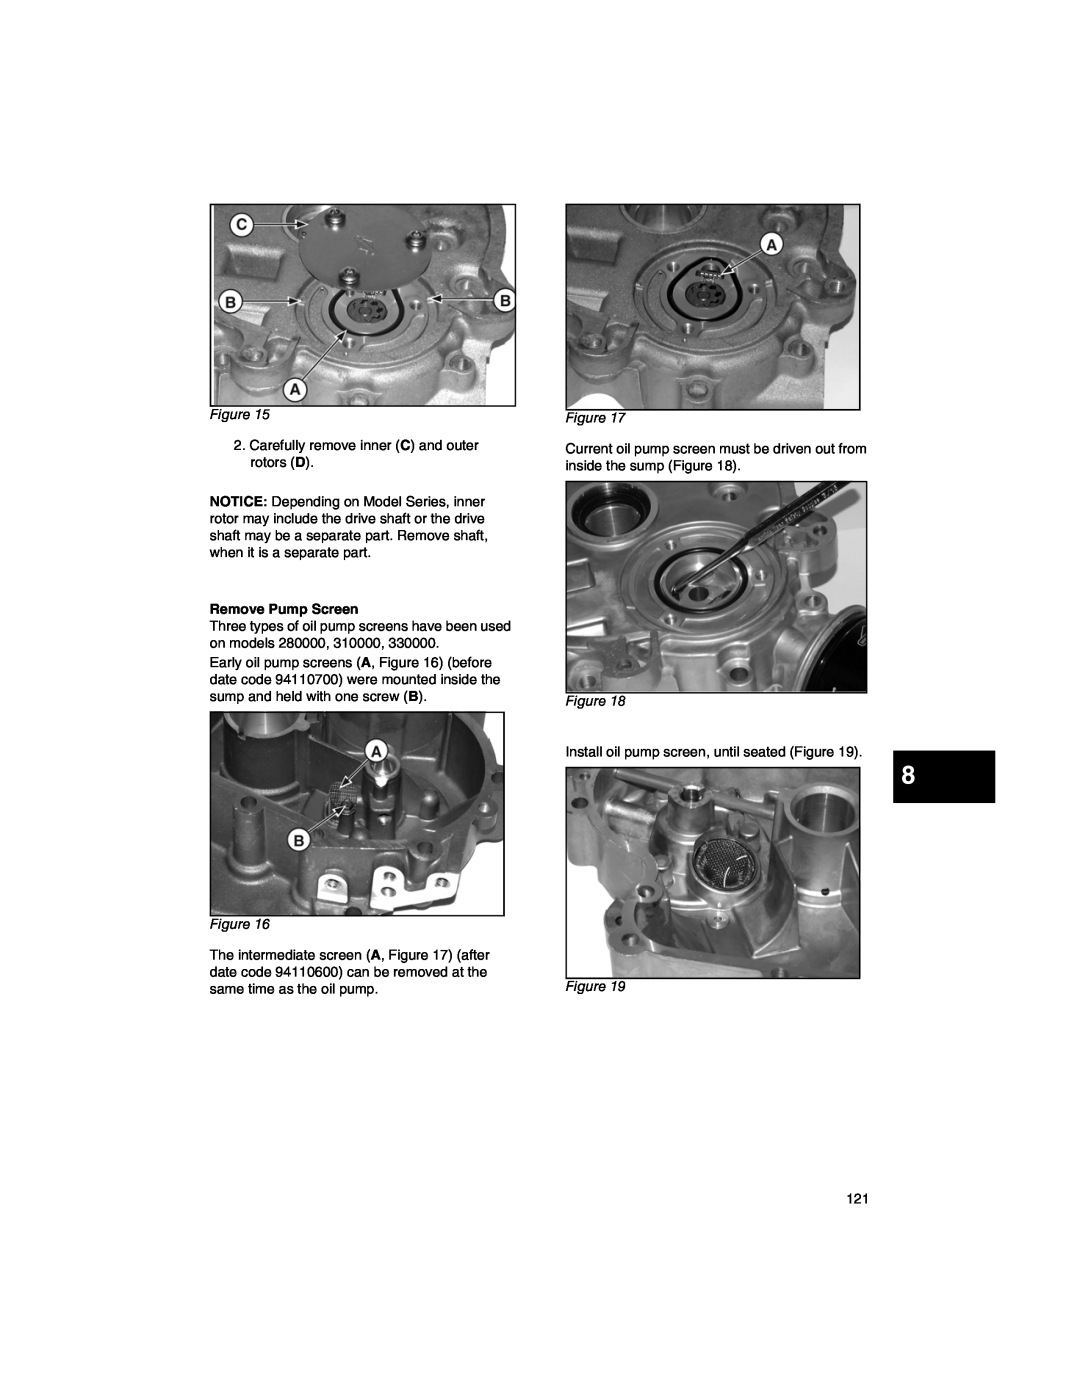 Briggs & Stratton 273521, 271172, 270962, CE8069, 276535 manual Remove Pump Screen 